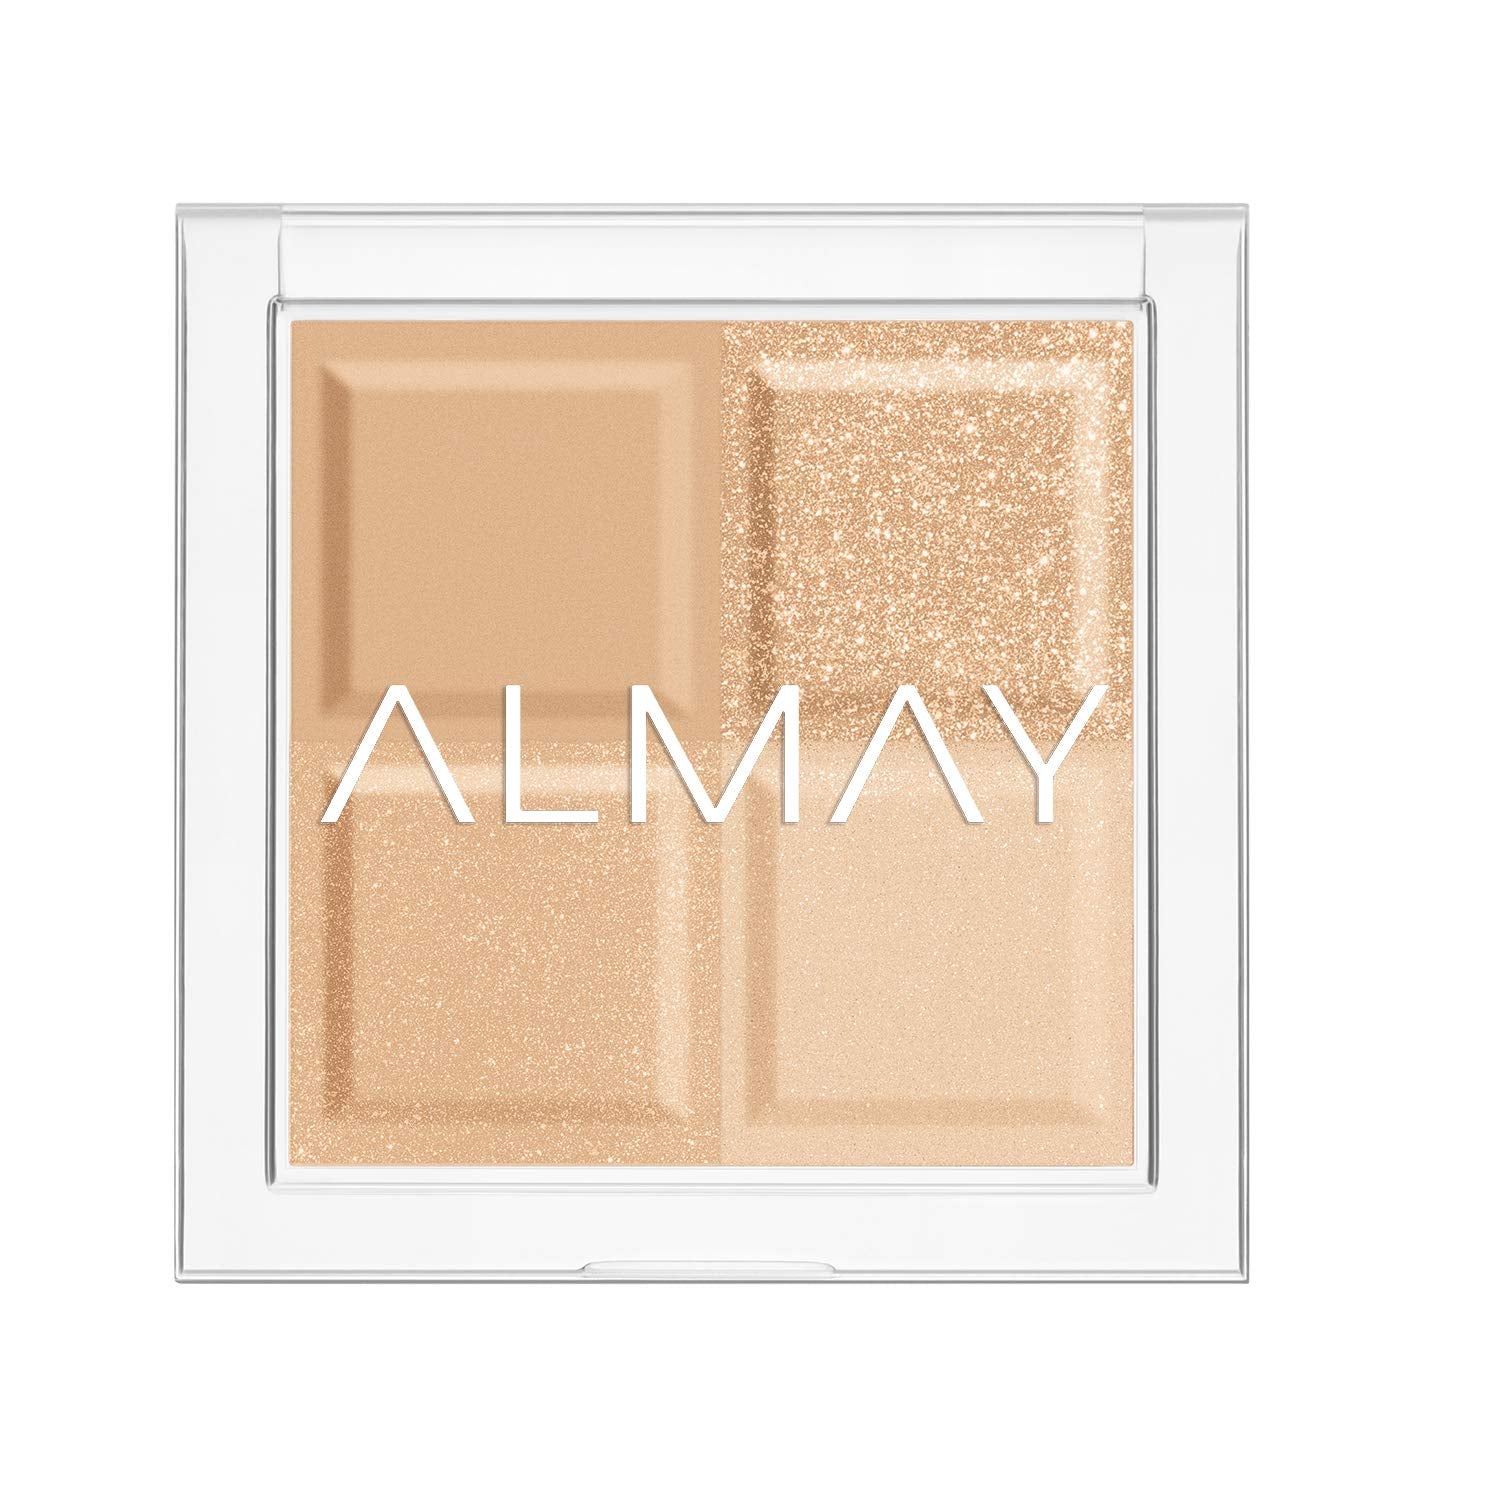 ALMAY Shadow Quad - Pressed Powder Eyeshadow